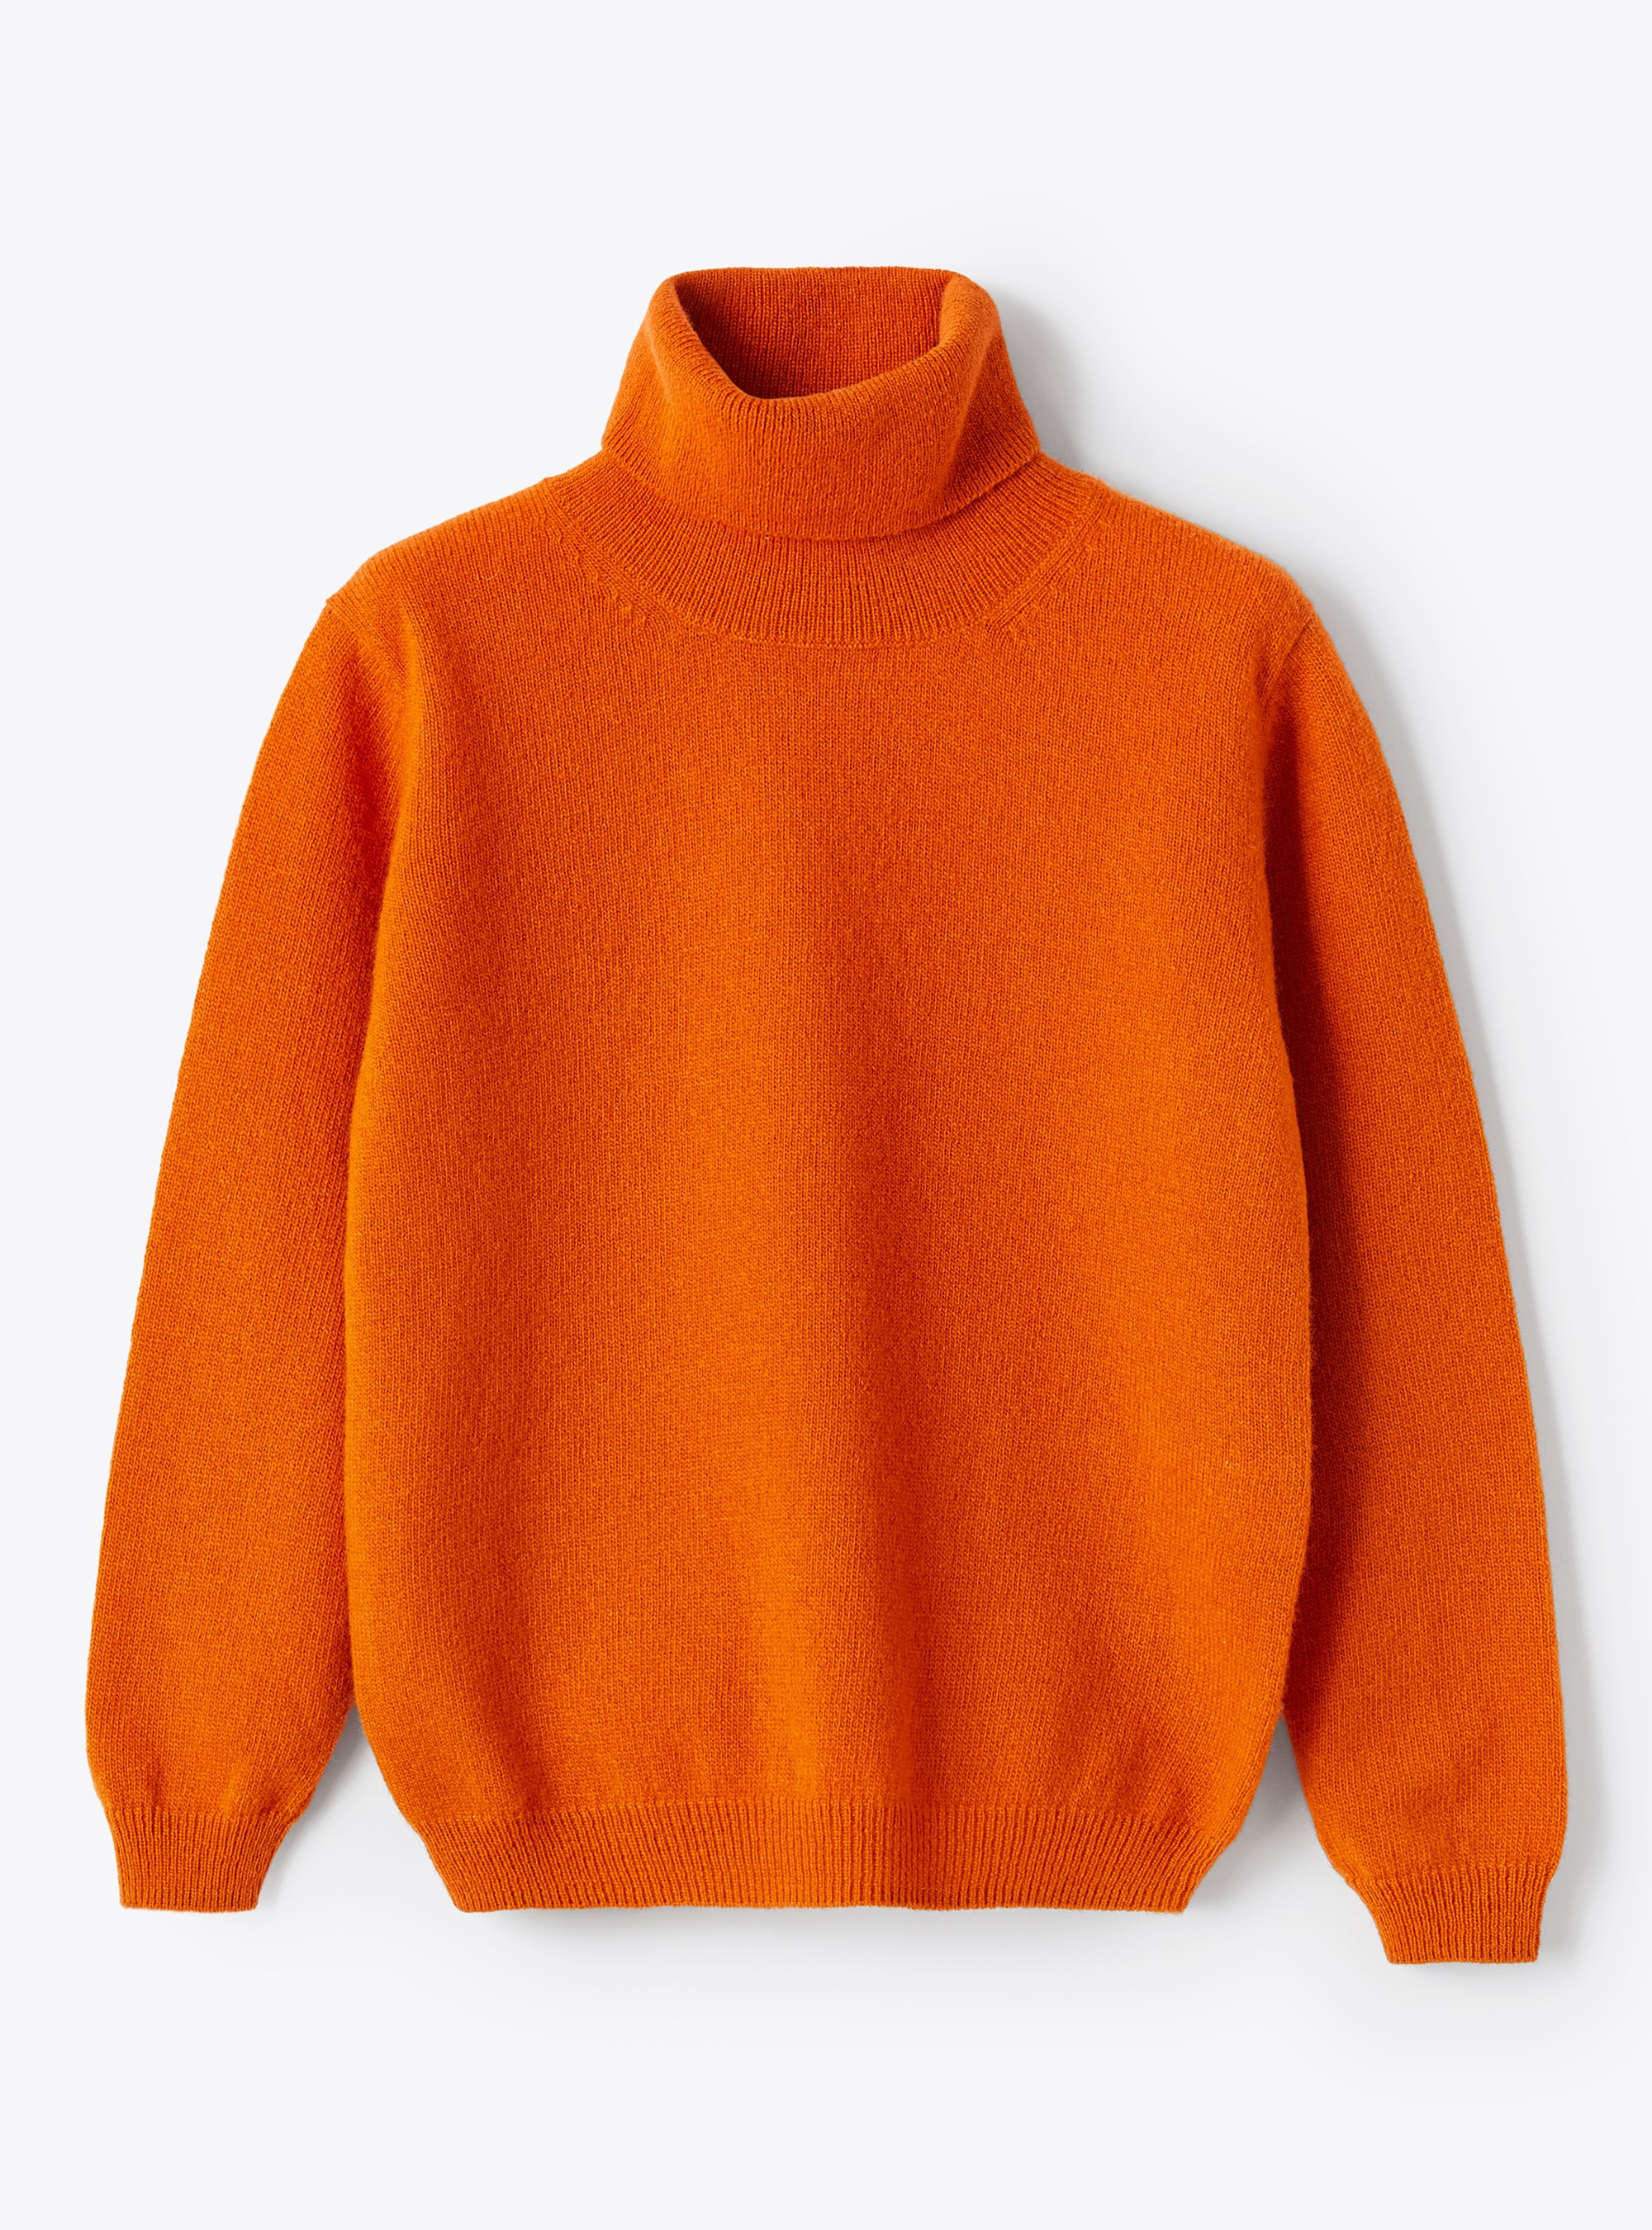 Dolcevita in lana merino arancio - Arancione | Il Gufo